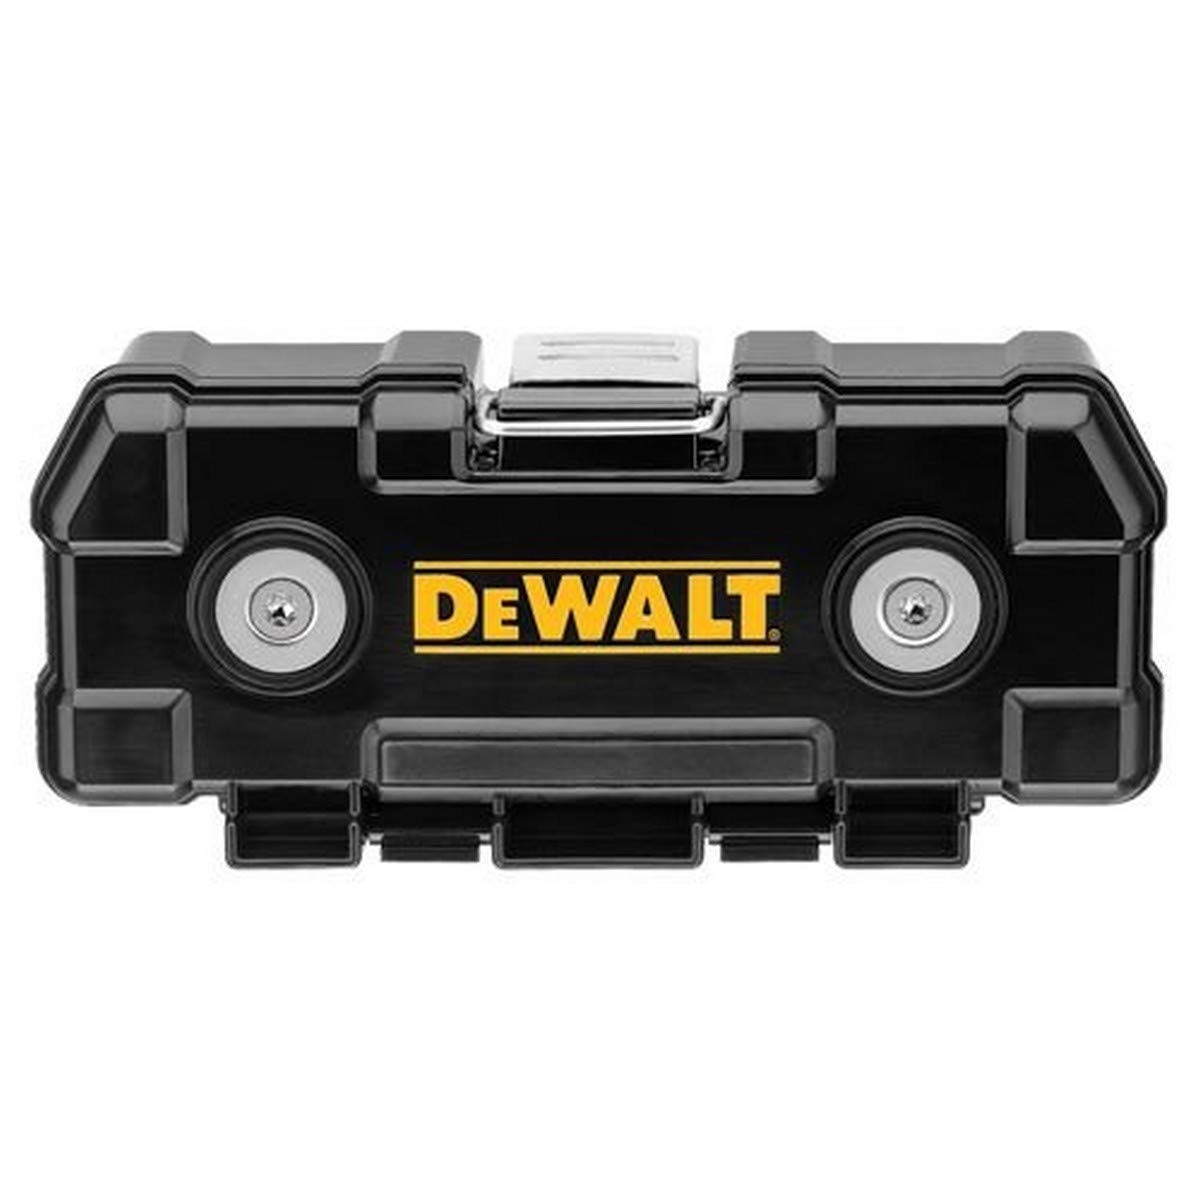 DEWALT 20-Piece Rapid Load Set with ToughCase+ - DW2503